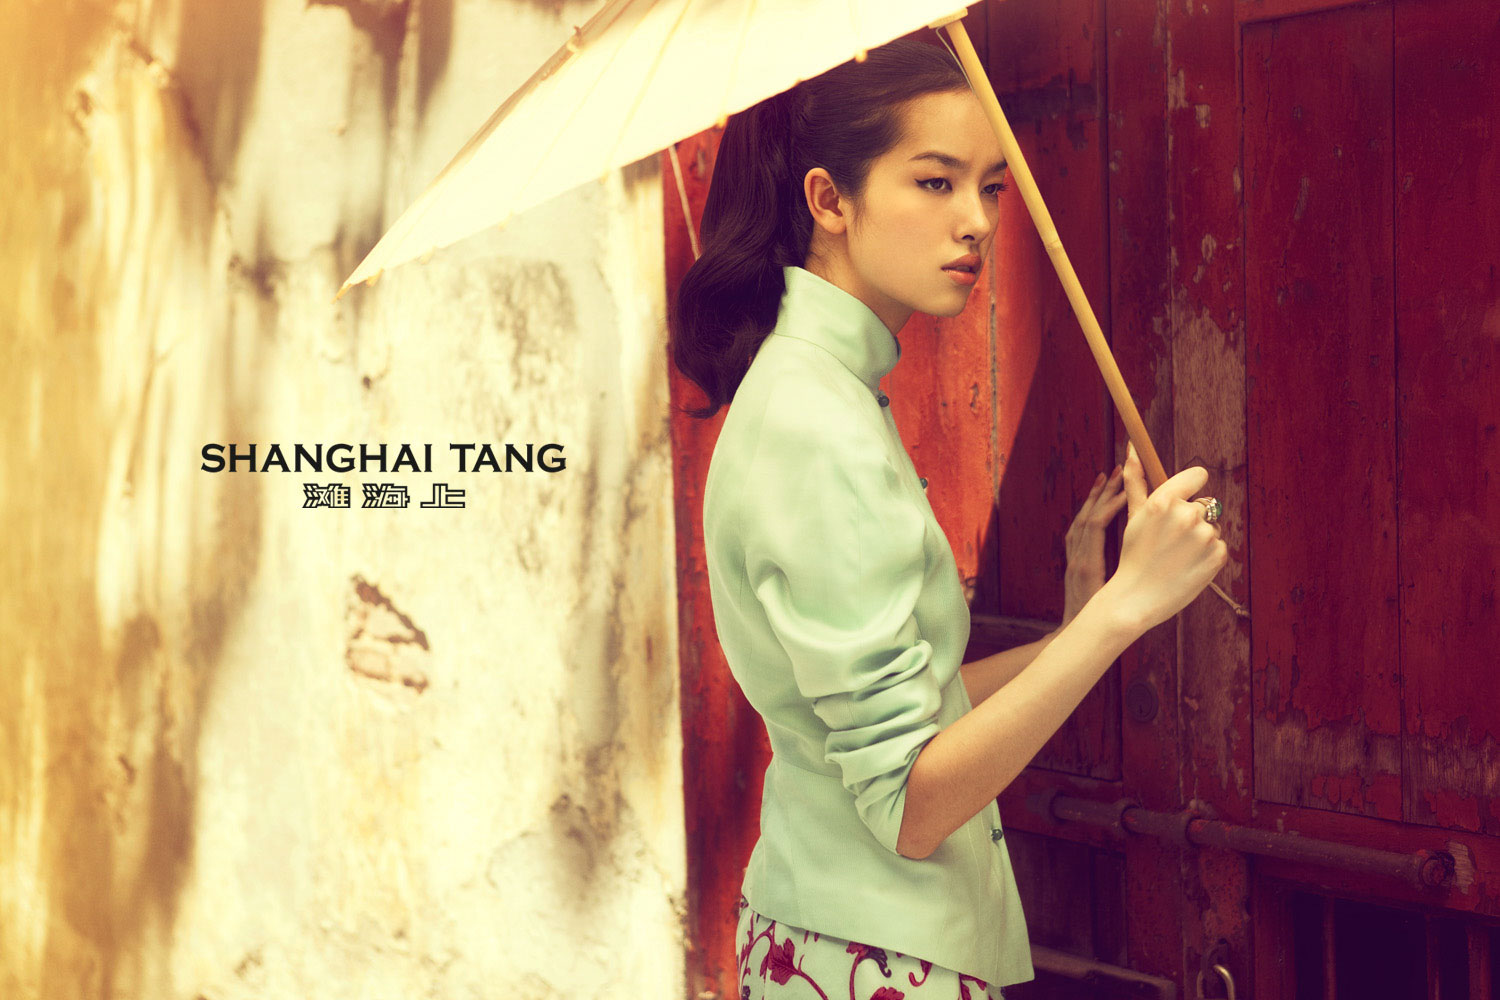 Campaña publicitaria realizada por el fotógrafo Richard Ramos junto a Enri Mür Studio para la marca Shanghai Tang.